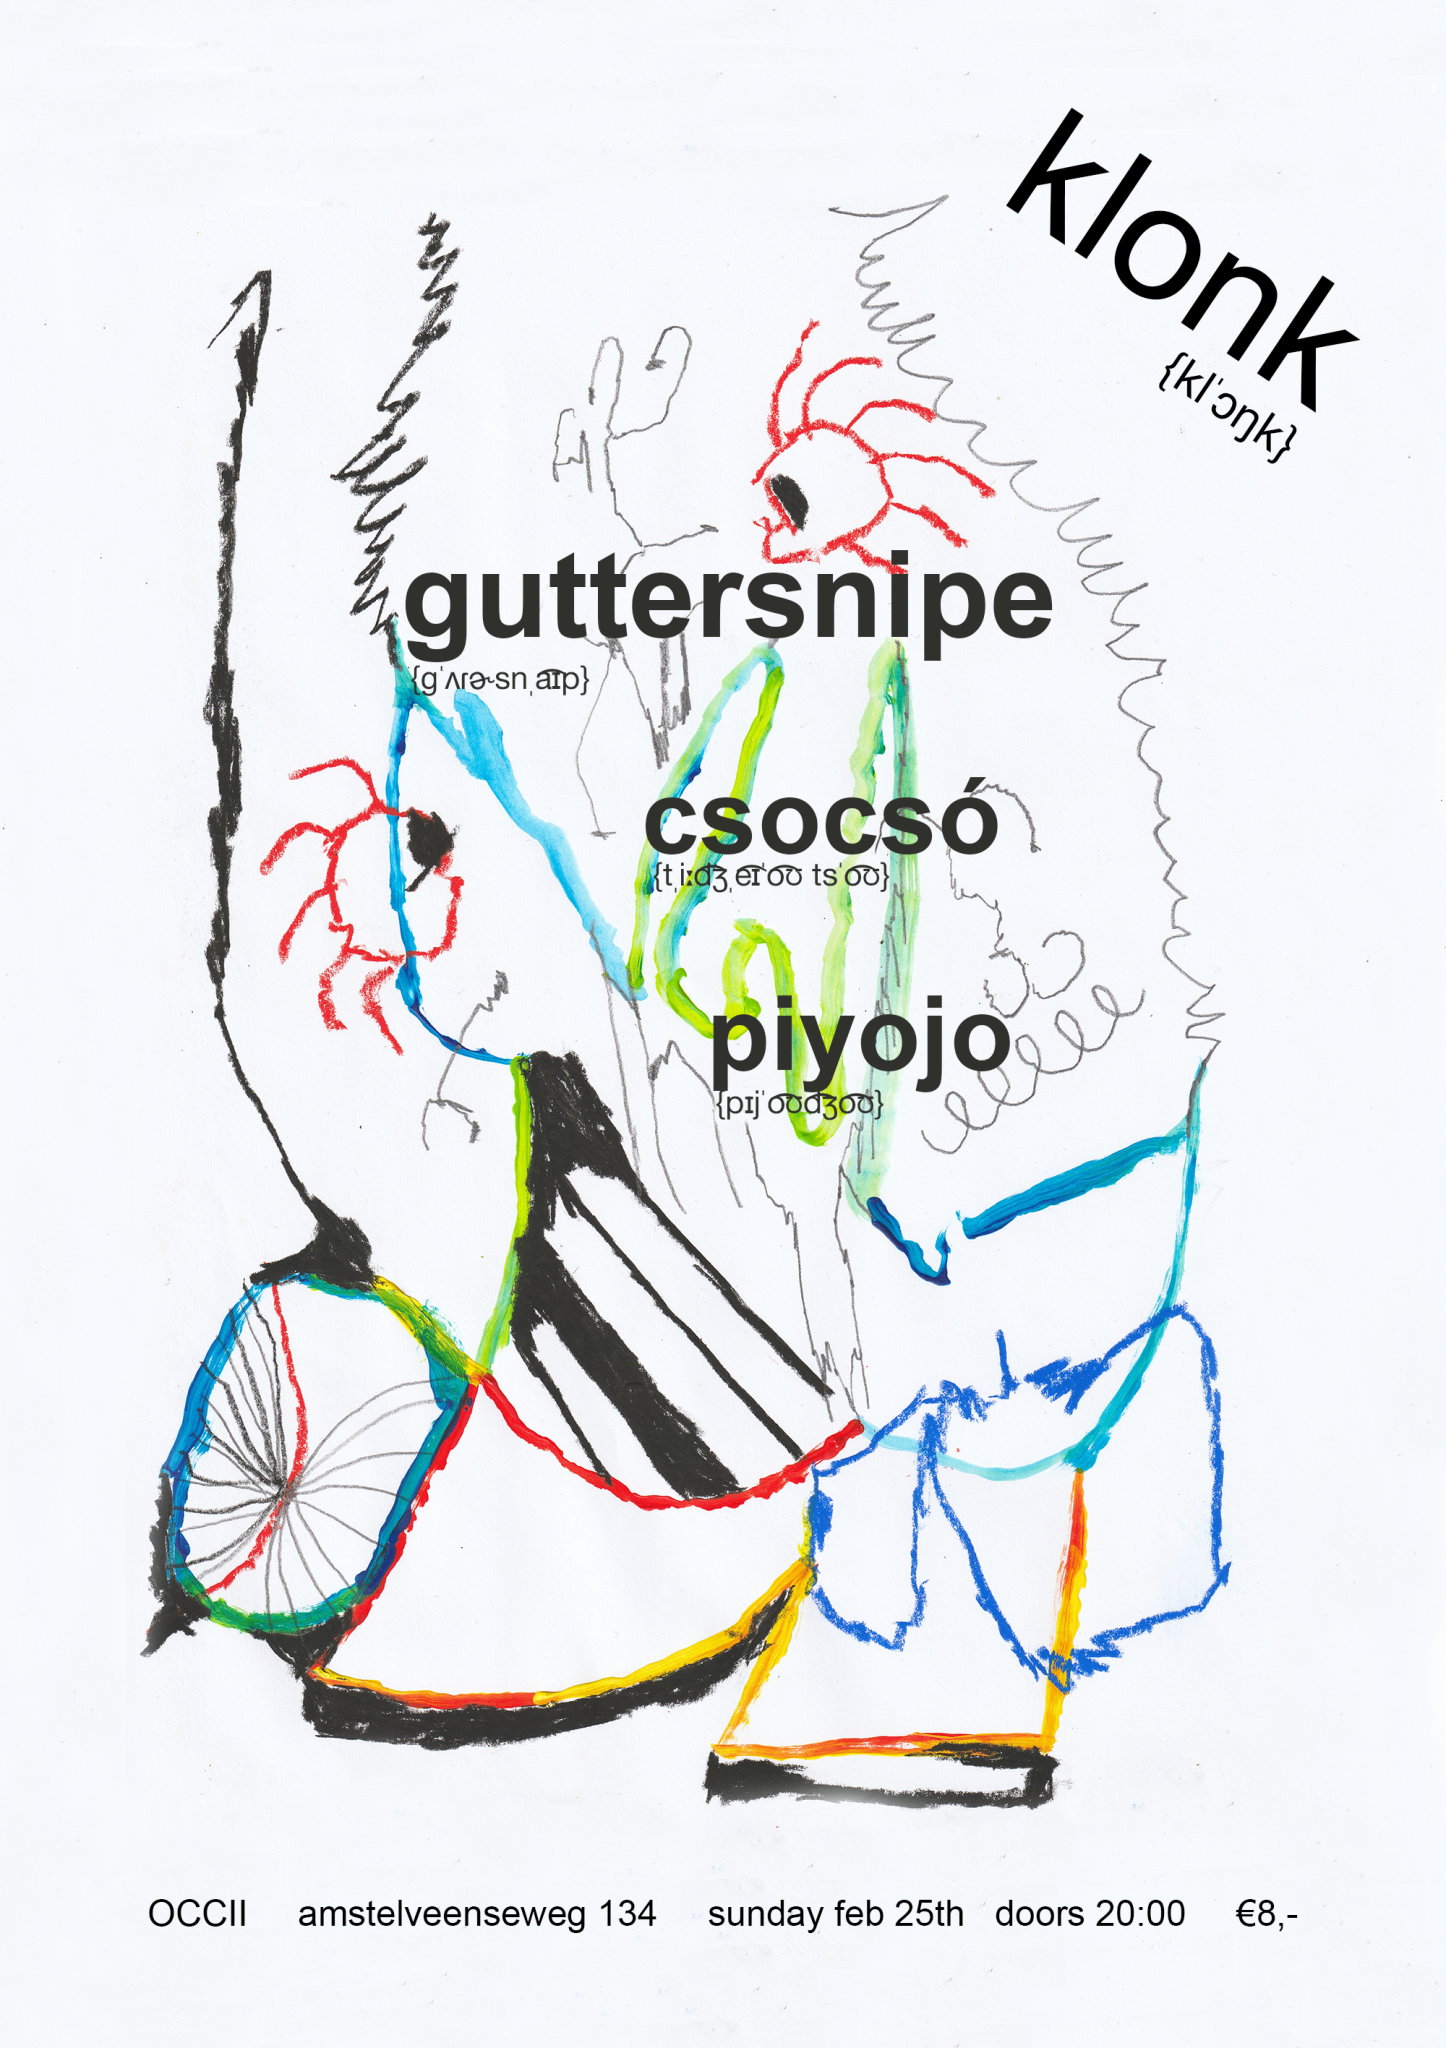 GUTTERSNIPE (UK) + CSOCSÓ (BE) + PIYOJO + DJ STEVE